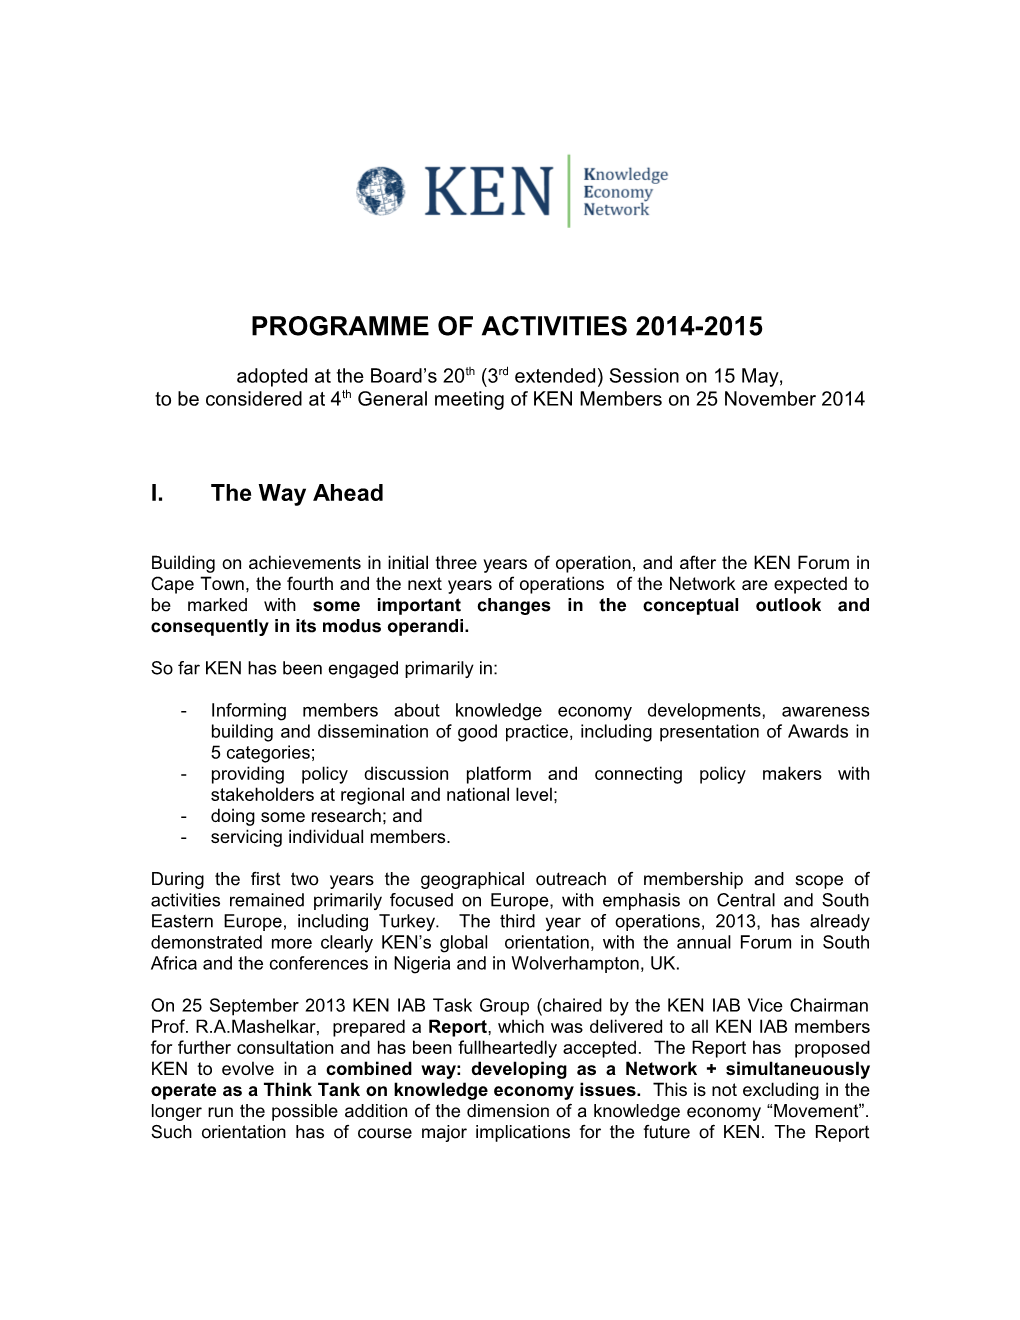 Programme of Activities 2011-2012